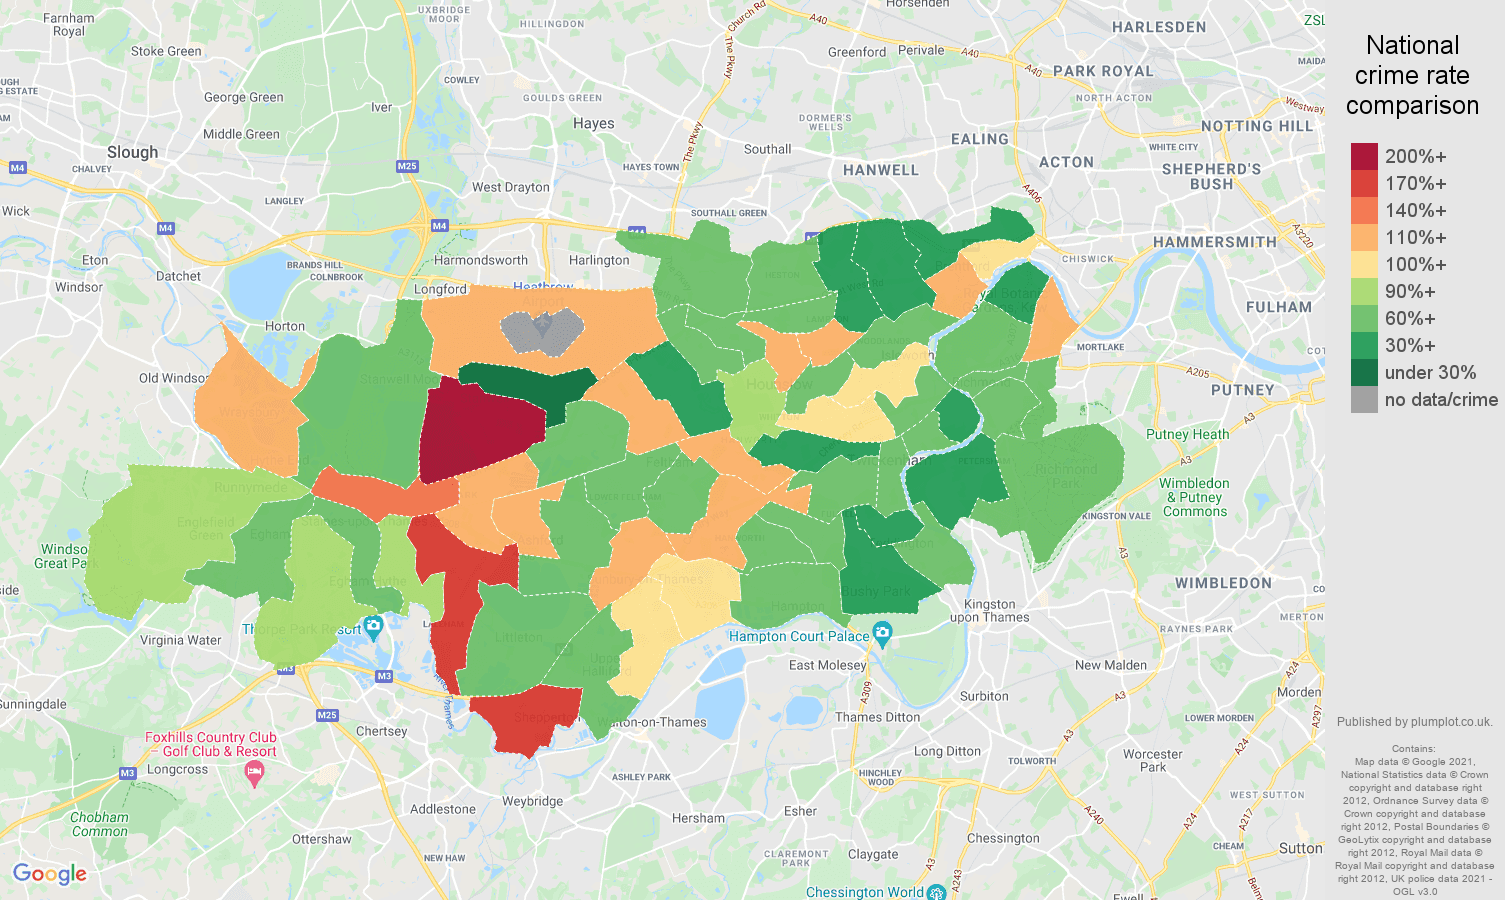 Twickenham criminal damage and arson crime rate comparison map